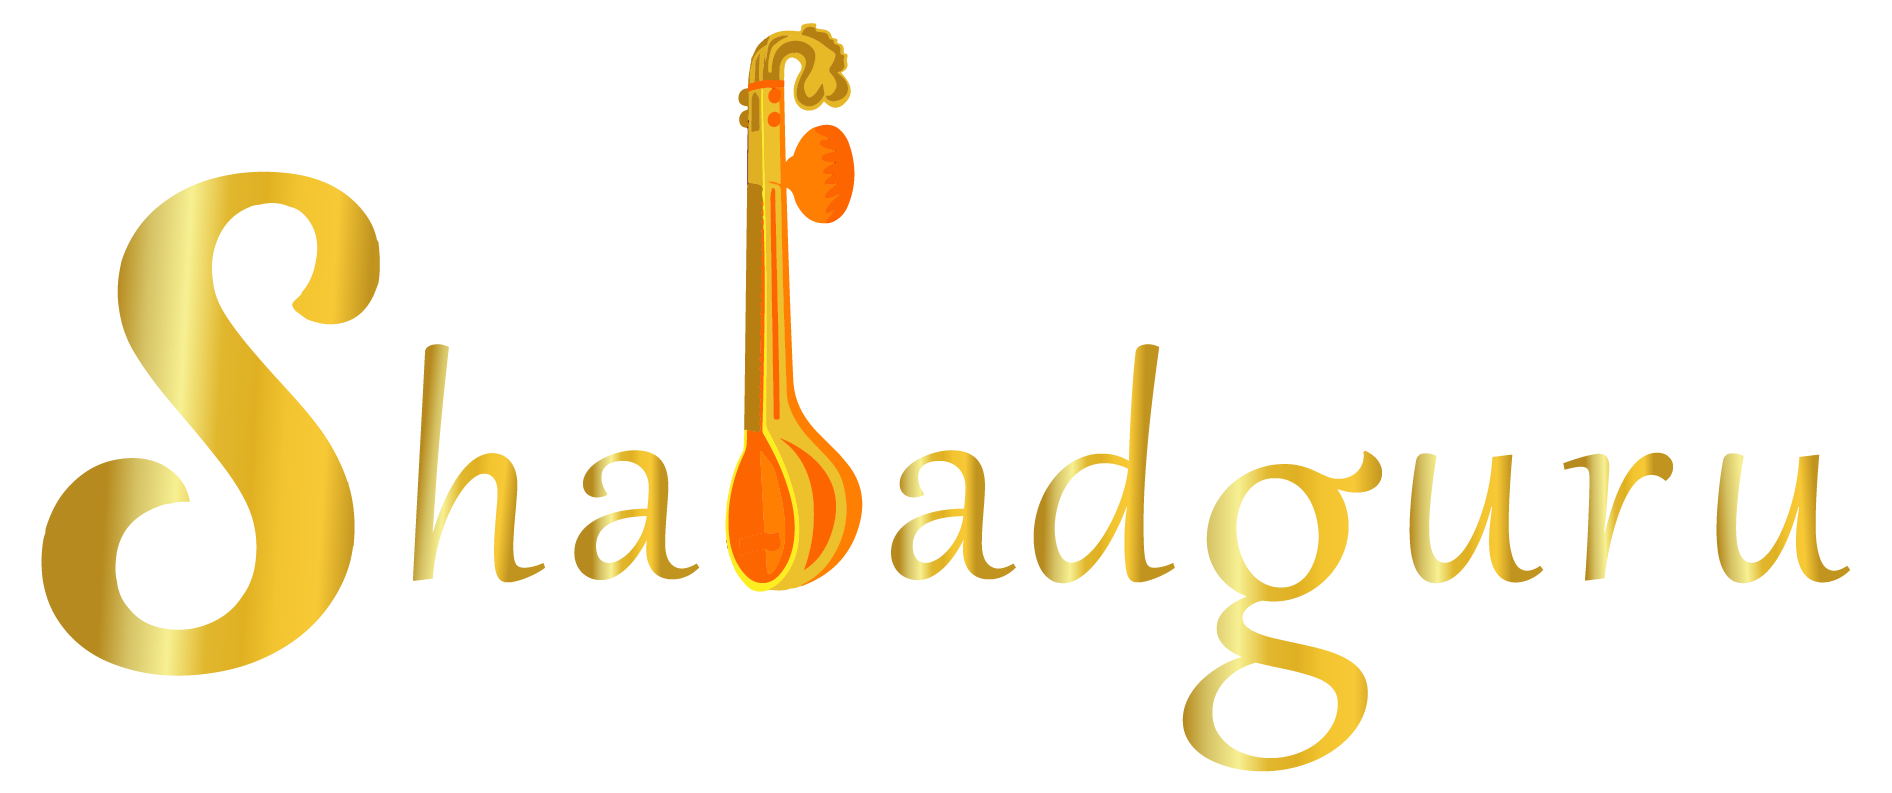 Shabadguru-logo